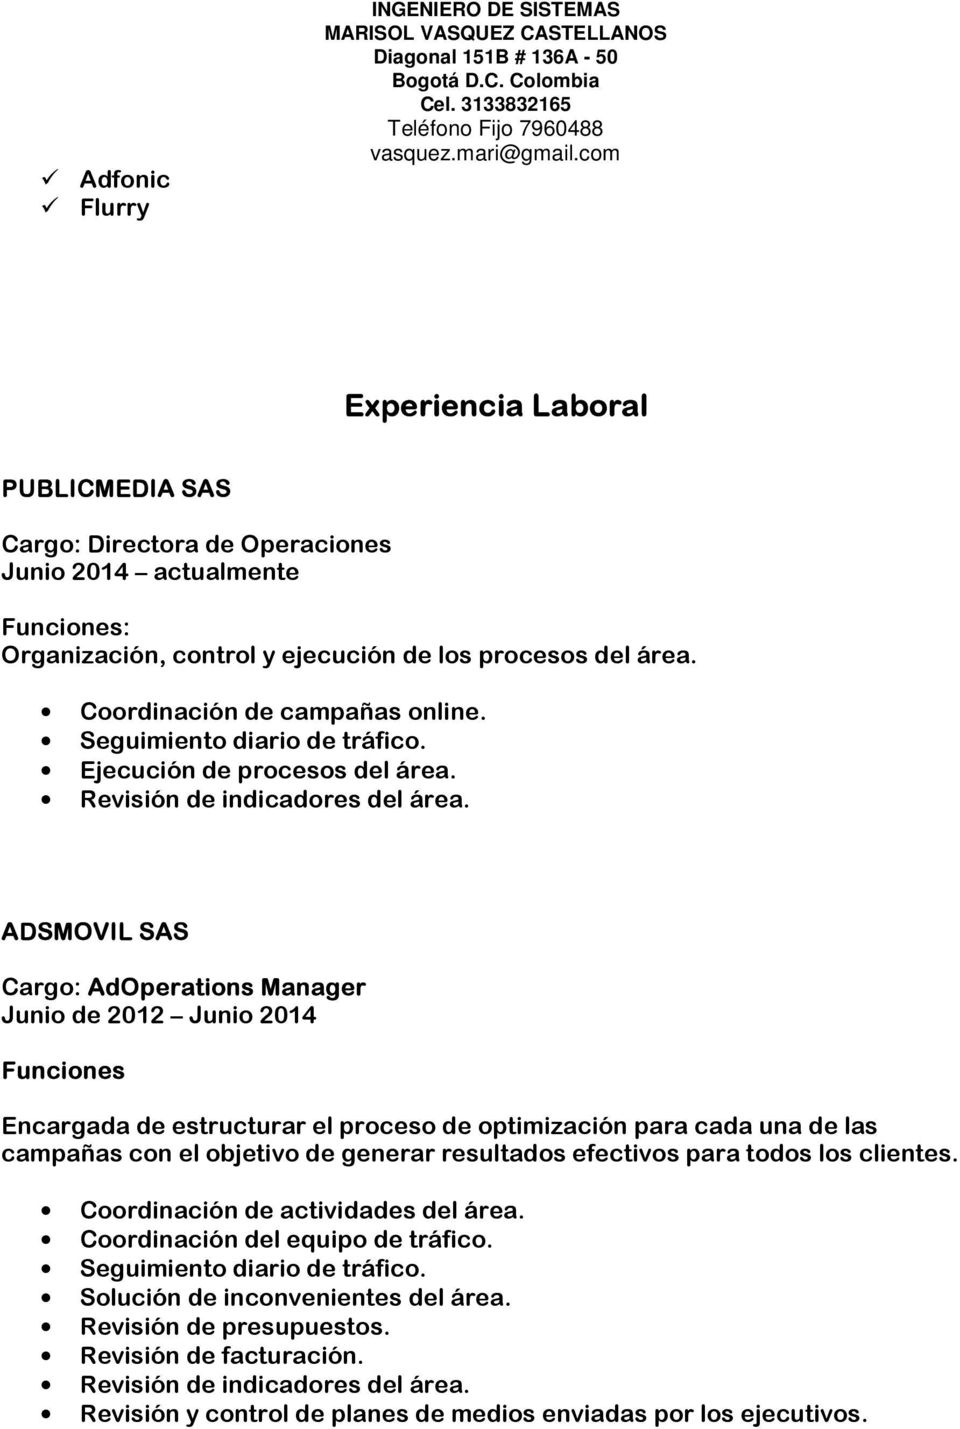 ADSMOVIL SAS Cargo: AdOperations Manager Junio de 2012 Junio 2014 Funciones Encargada de estructurar el proceso de optimización para cada una de las campañas con el objetivo de generar resultados